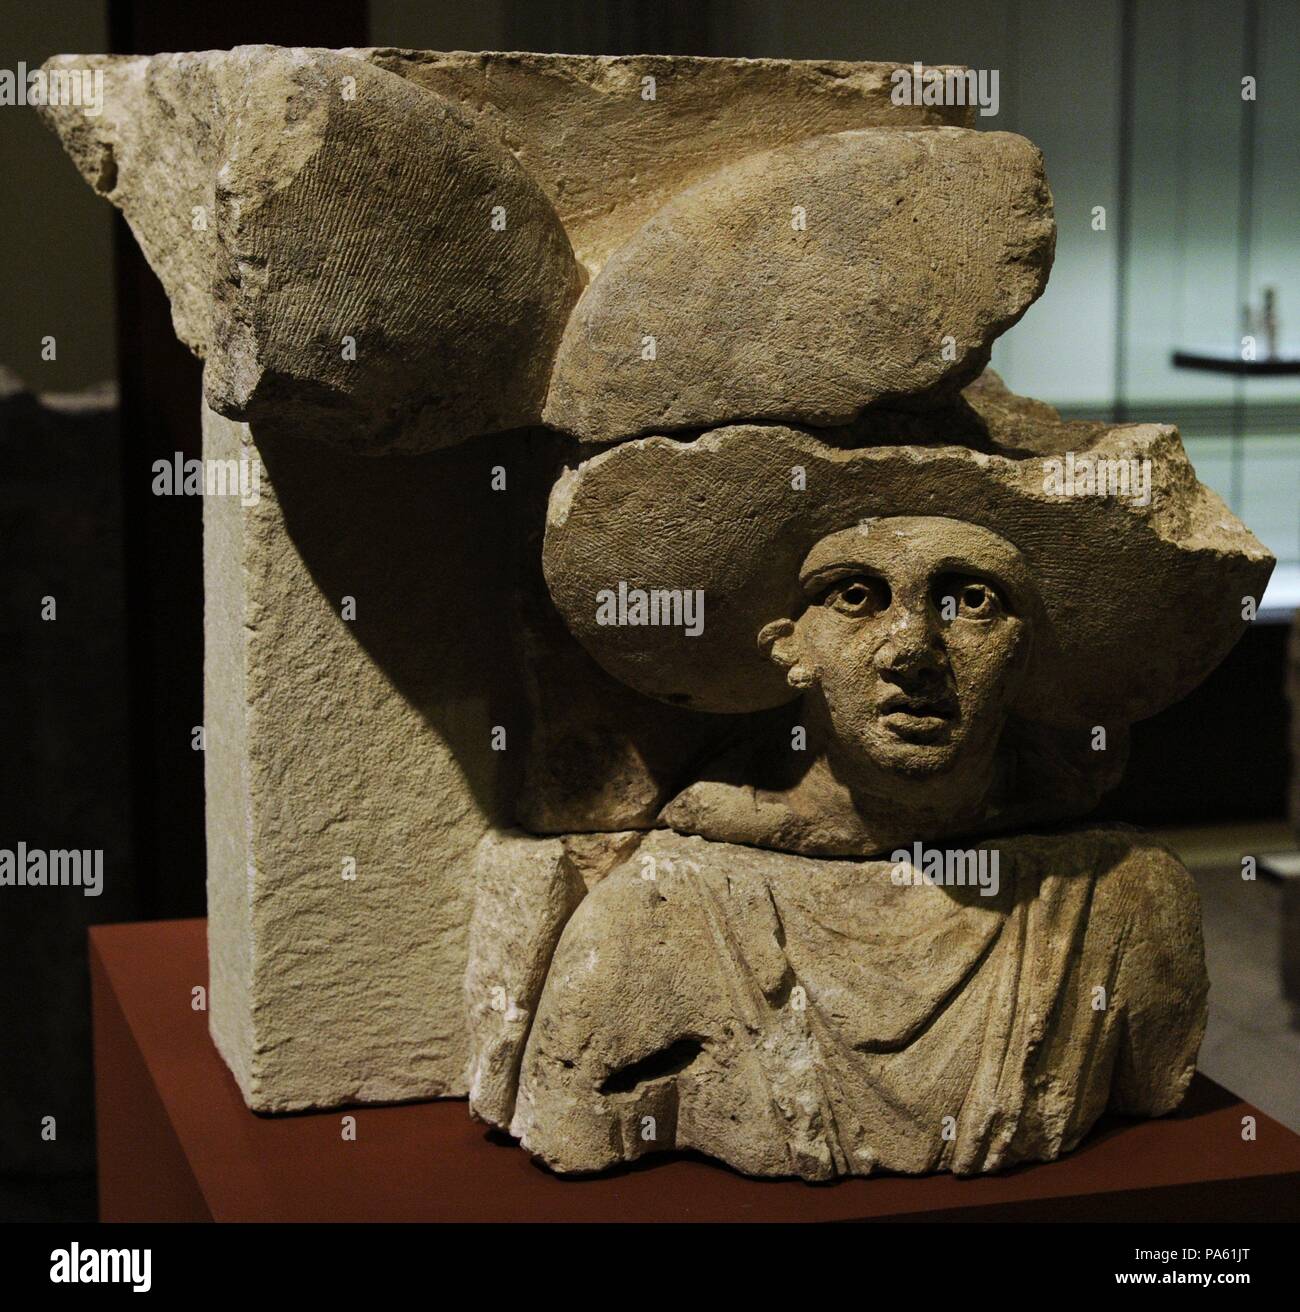 Frammento di una matrona rilievo (testa e parte superiore). Metà del secondo secolo. Calcare. Museo Roman-Germanic. Colonia. Germania. Foto Stock